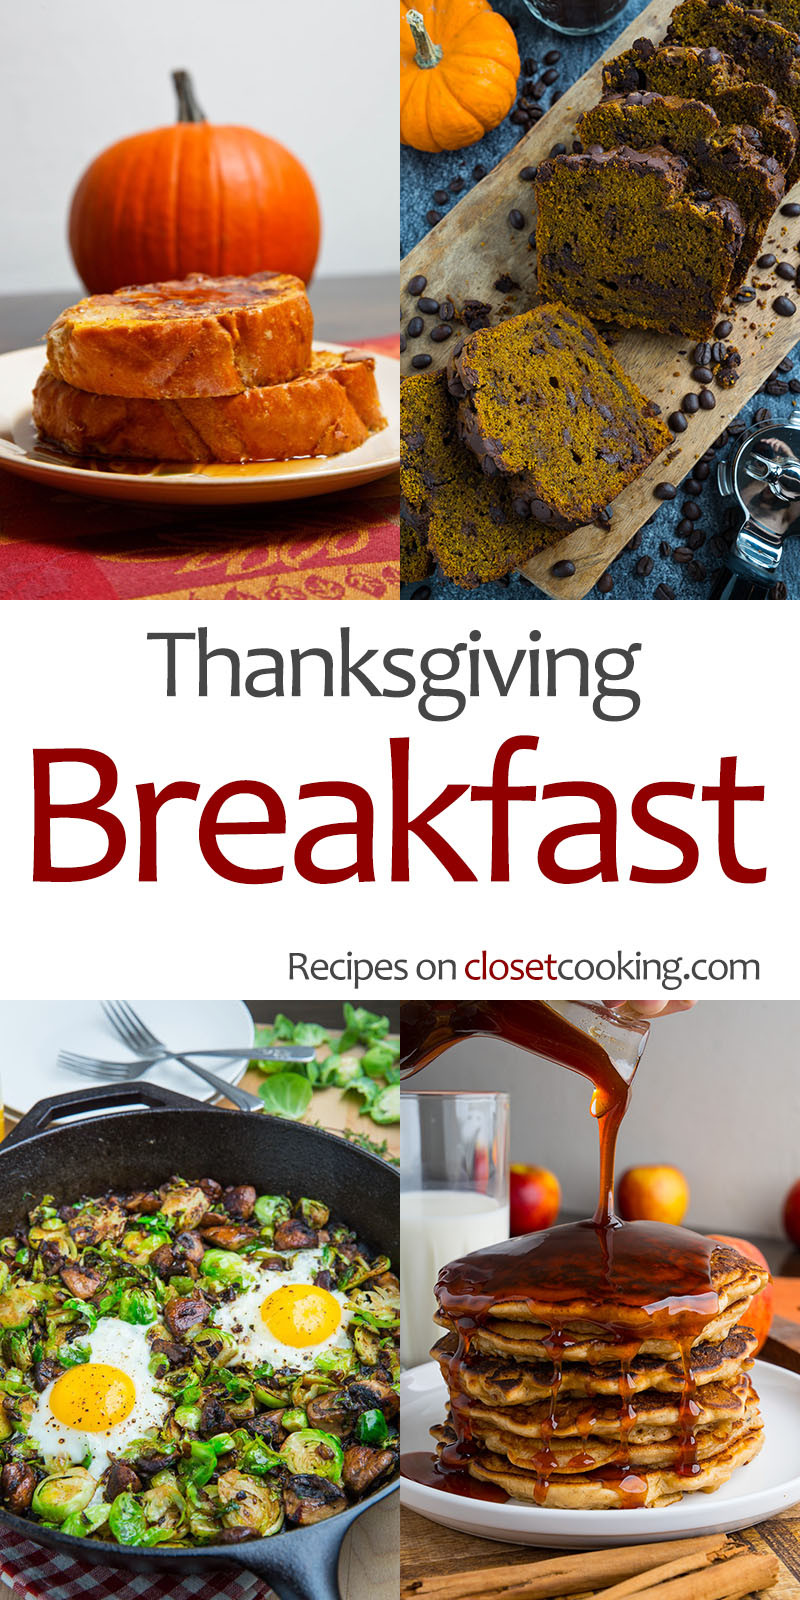 Thanksgiving Breakfast Recipes
 Thanksgiving Breakfast Recipes Closet Cooking